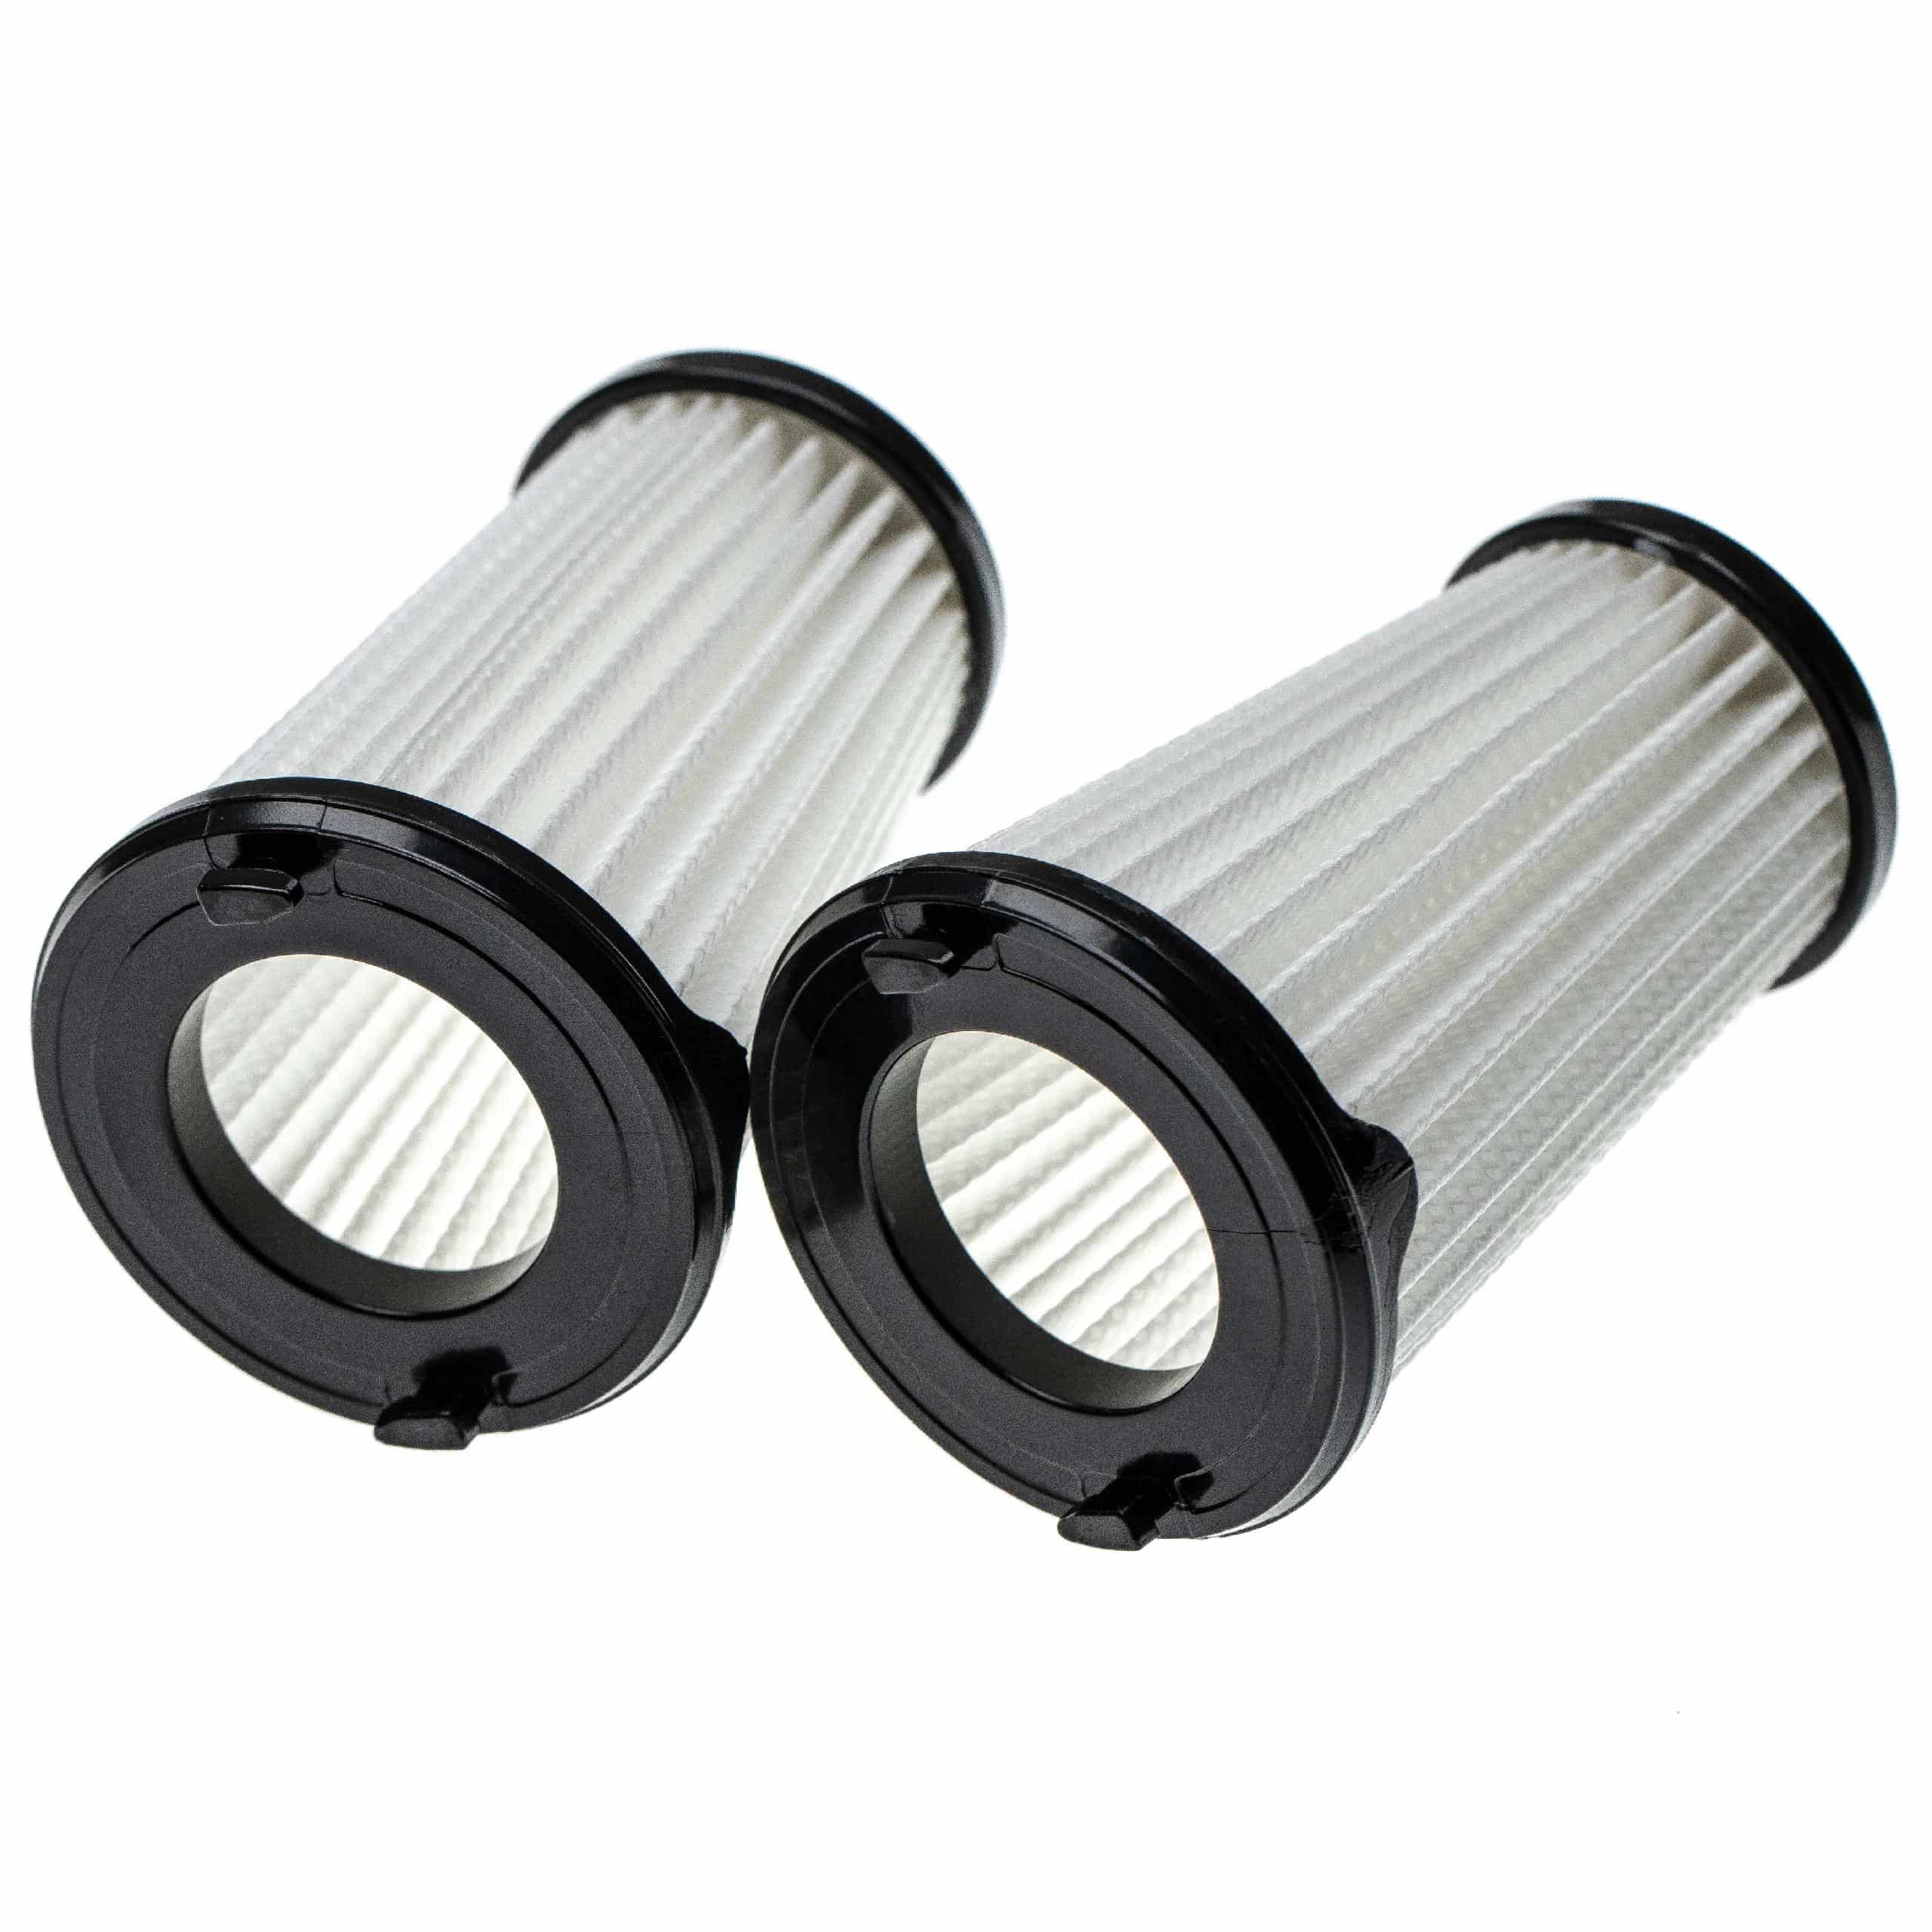 6x Filtro reemplaza AEG AEF150, 9001683755, 90094073100 para aspiradora - filtro laminar, negro / blanco